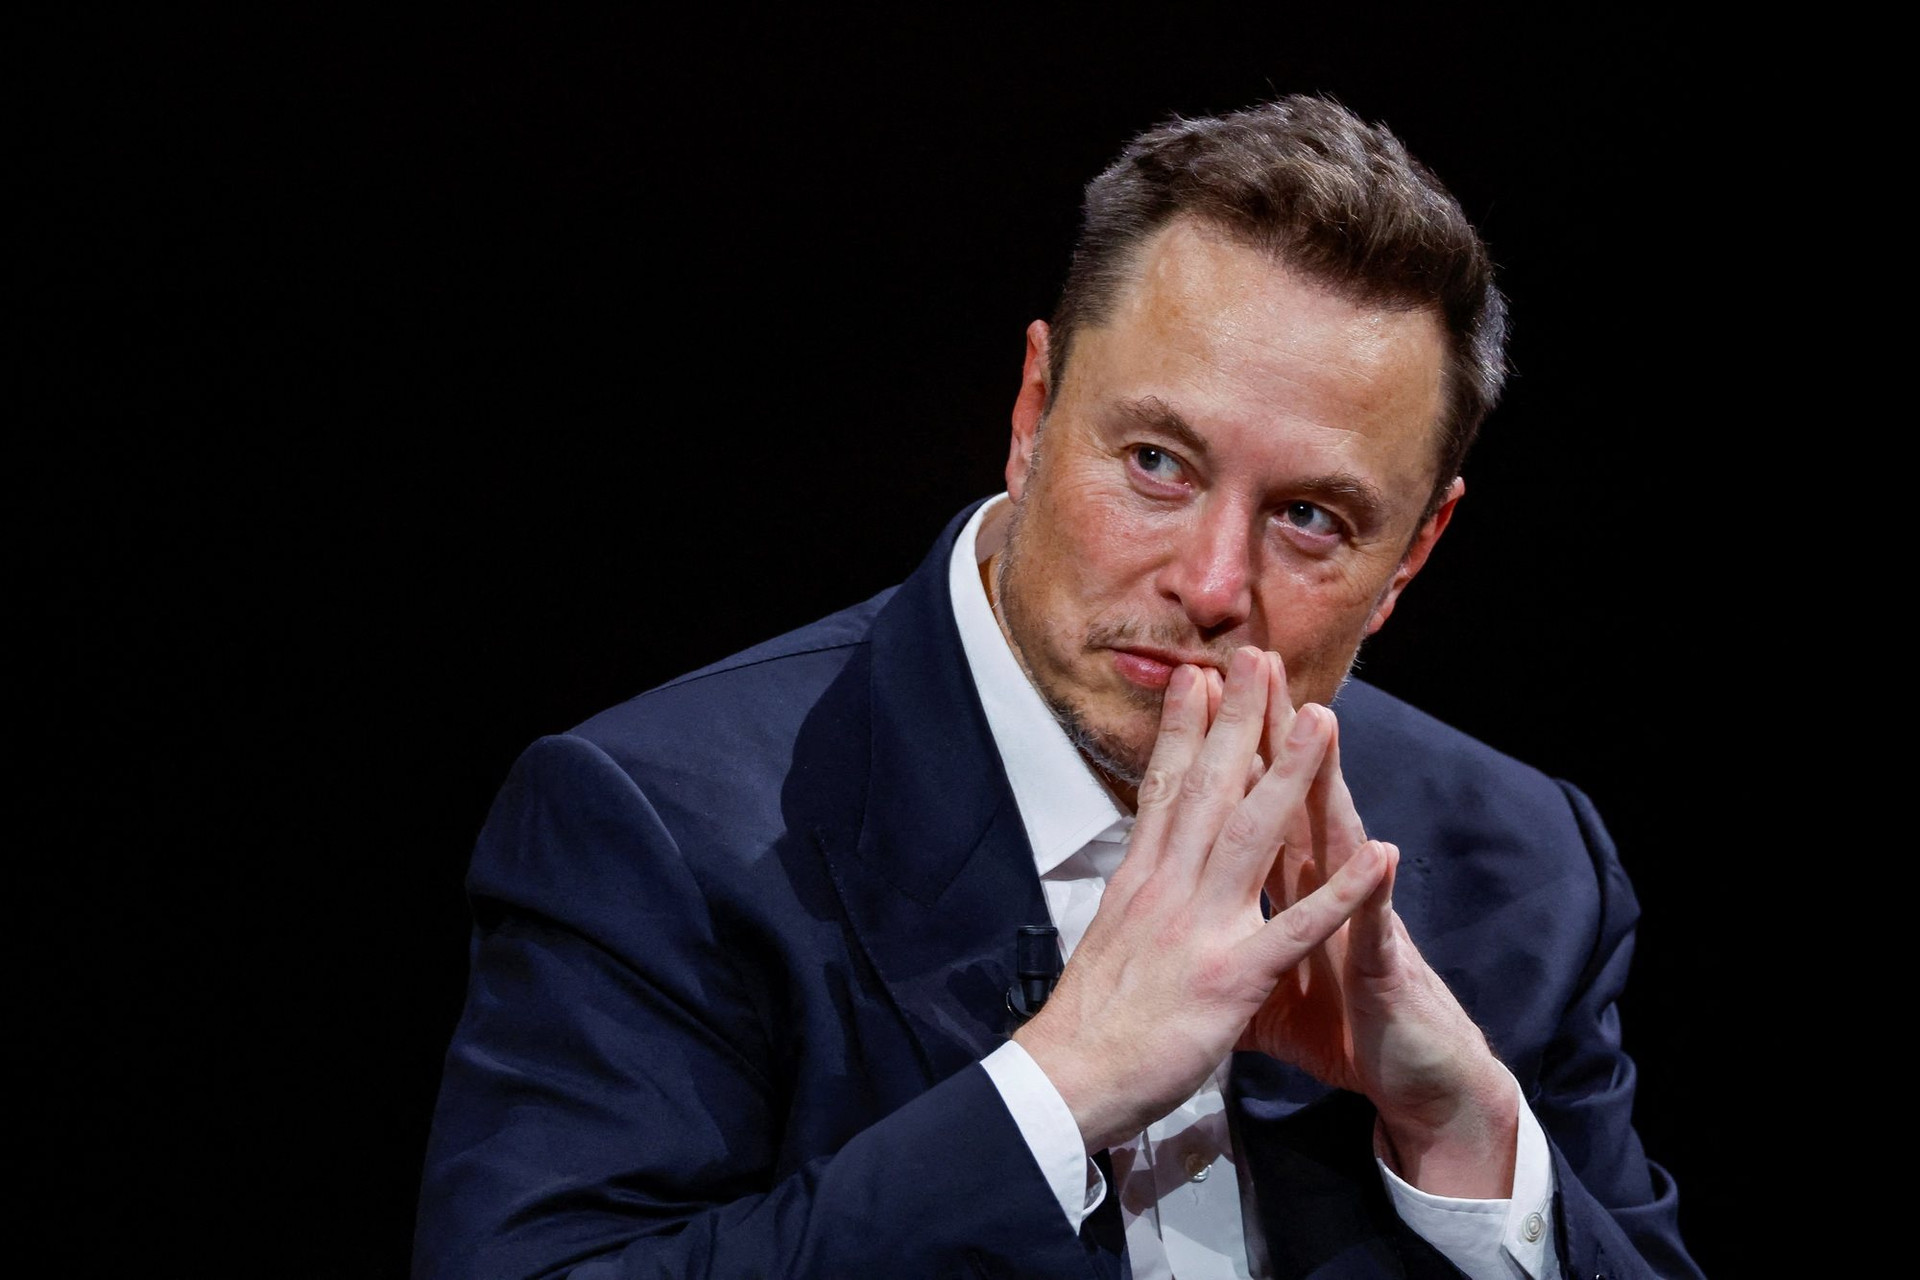 Tự tay Elon Musk đang 'dìm chết' Twitter: Phút bốc đồng khiến thành quả 15 năm xây dựng tan biến, thổi bay 4 tỷ USD giá trị thương hiệu - Ảnh 1.